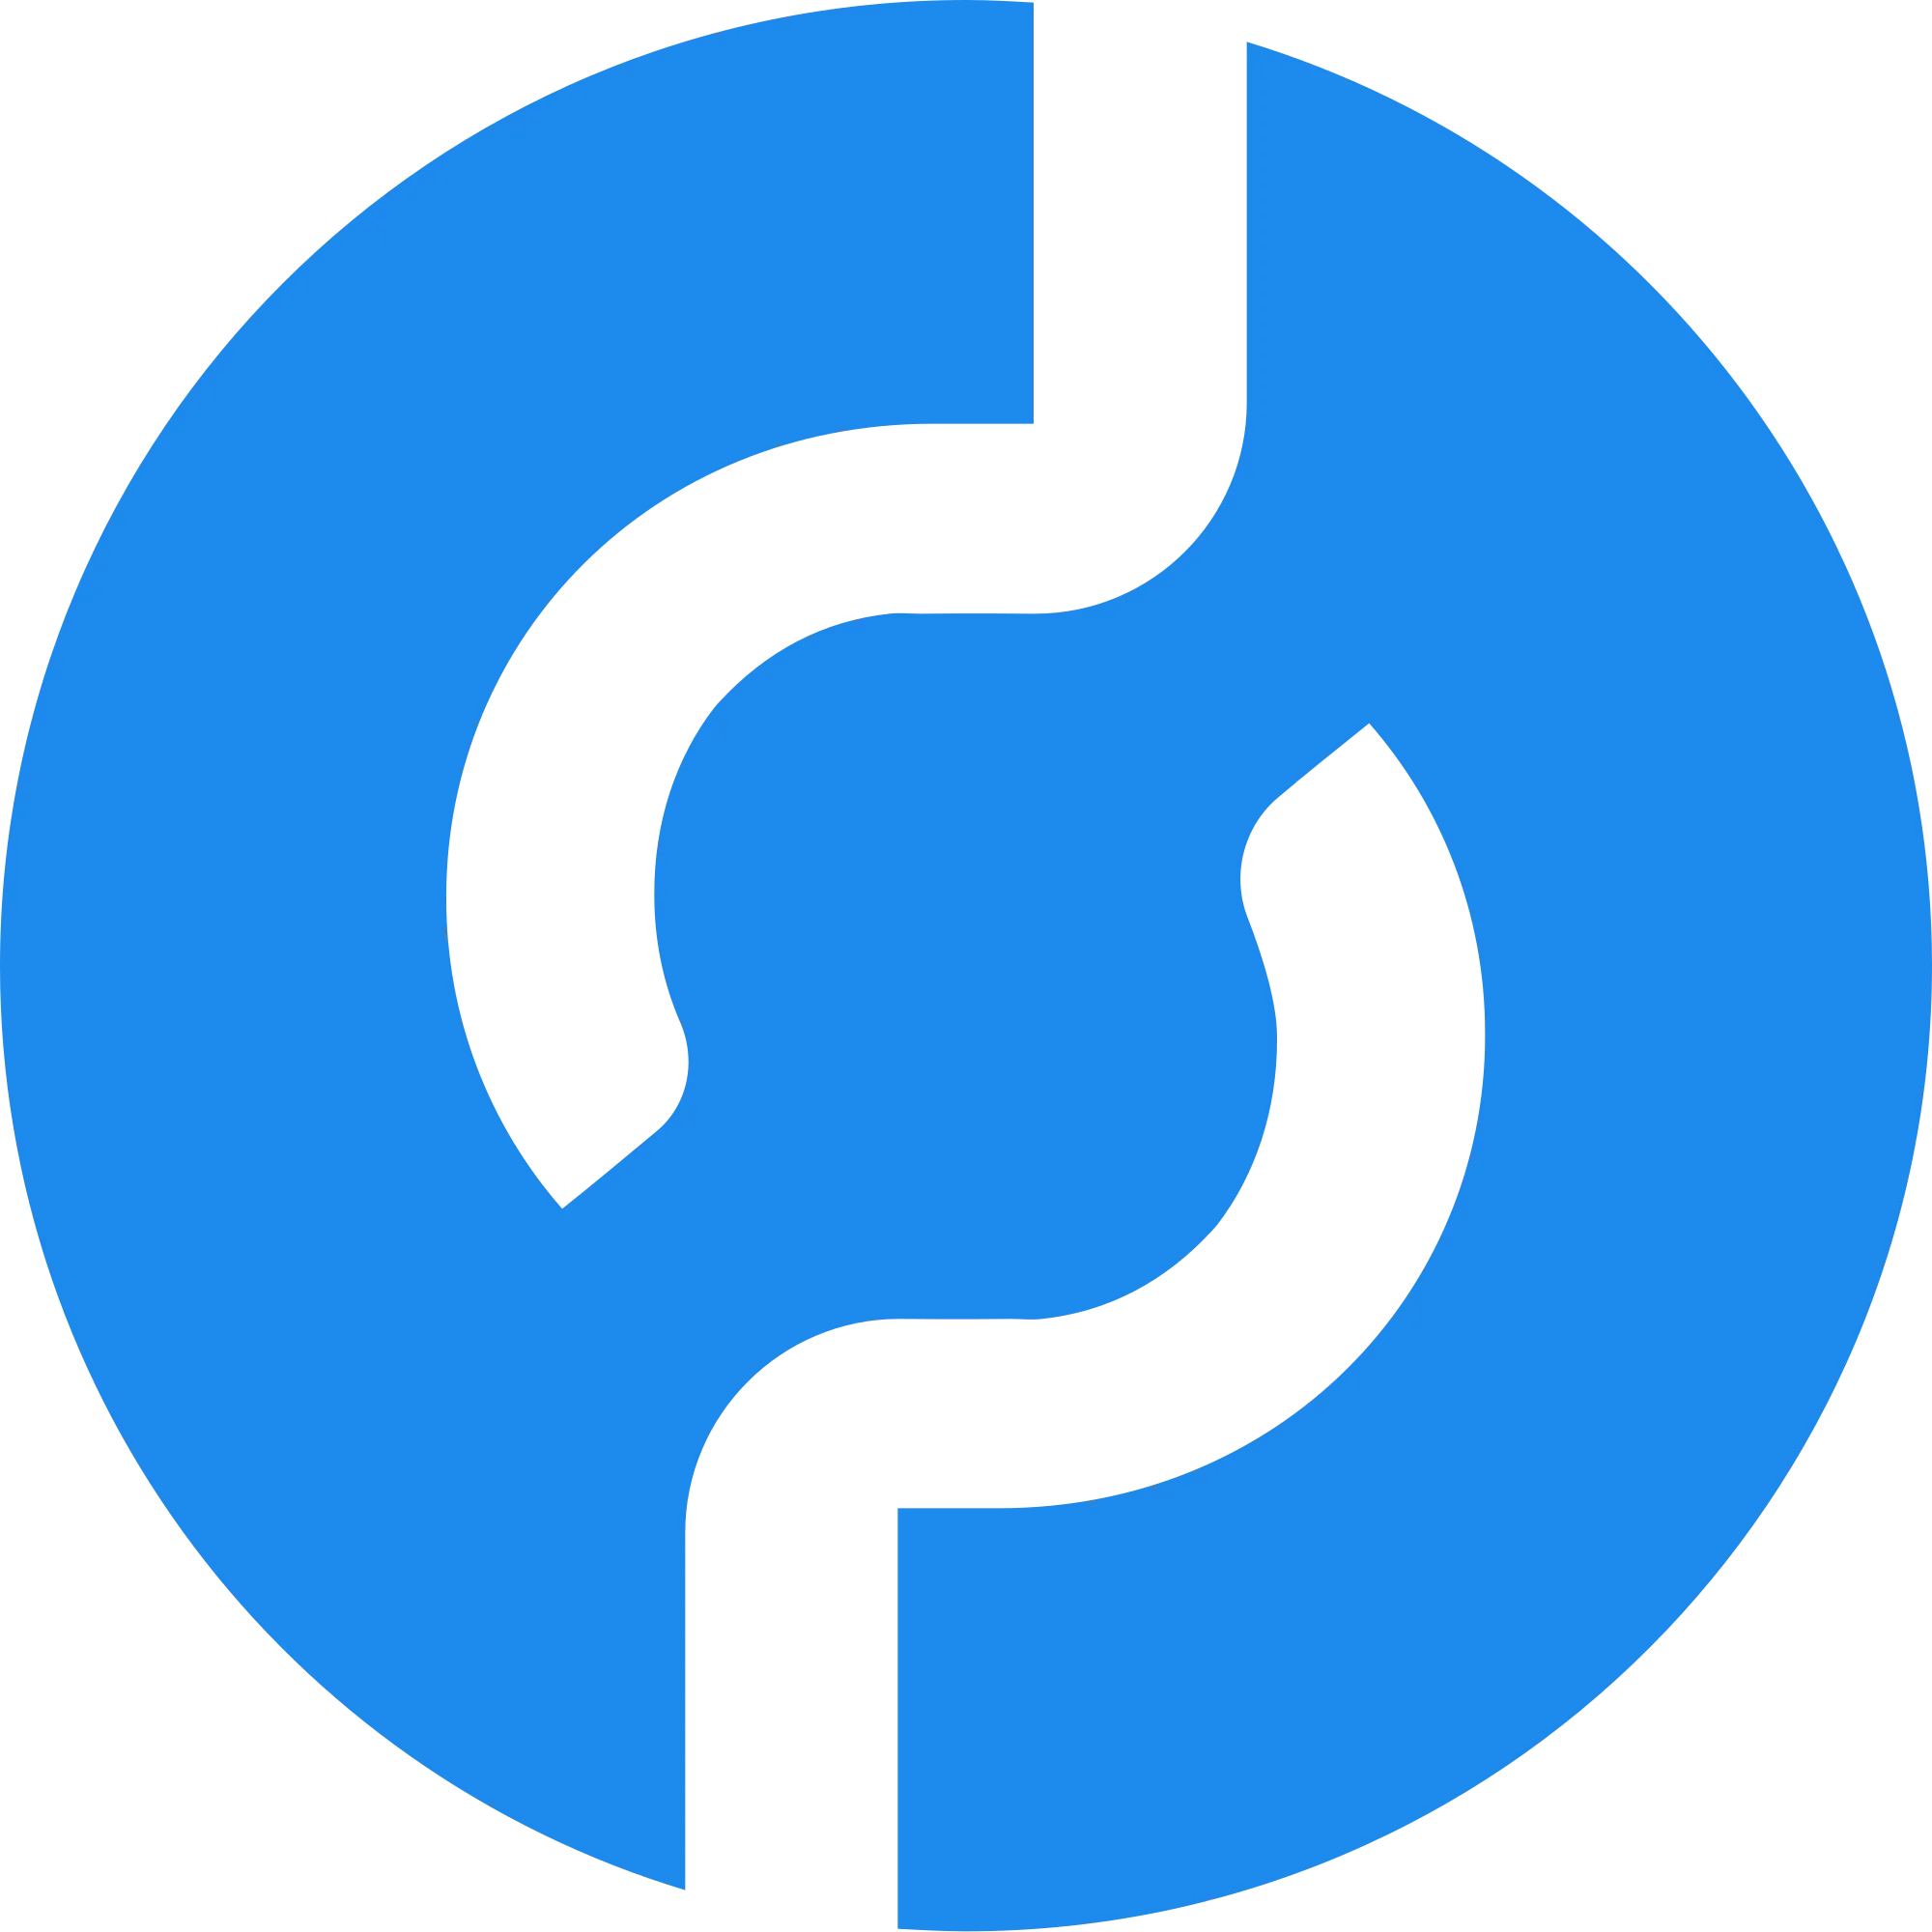 Pocket Network logo in png format